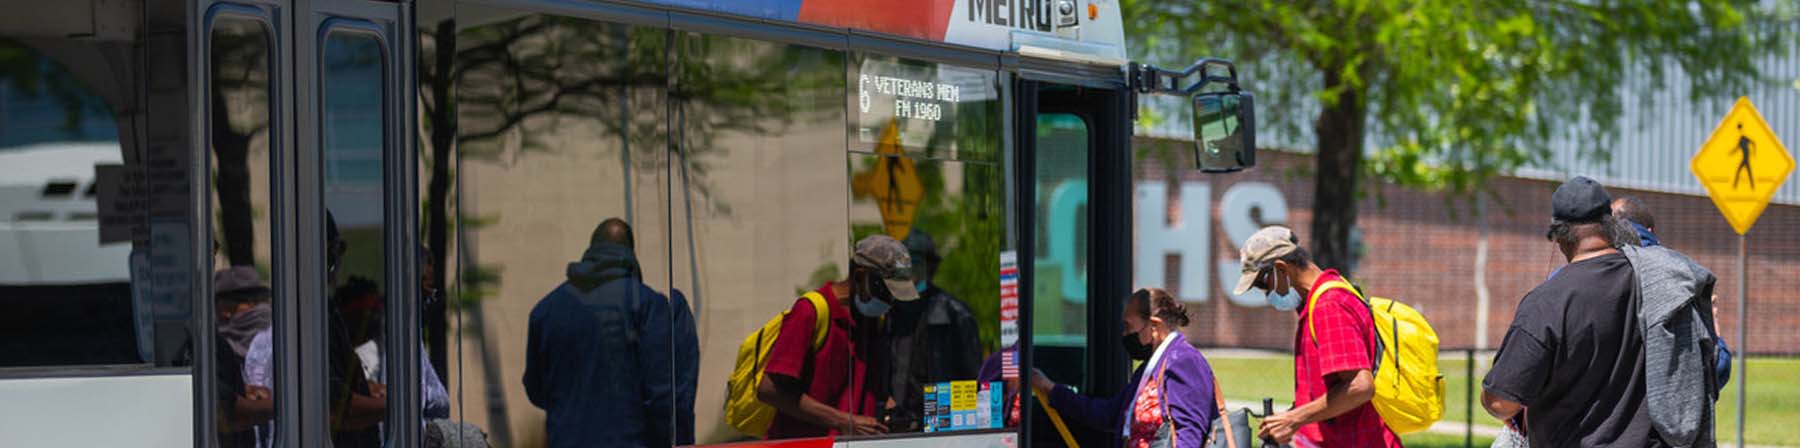 96 Veterans Memorial customers boarding bus